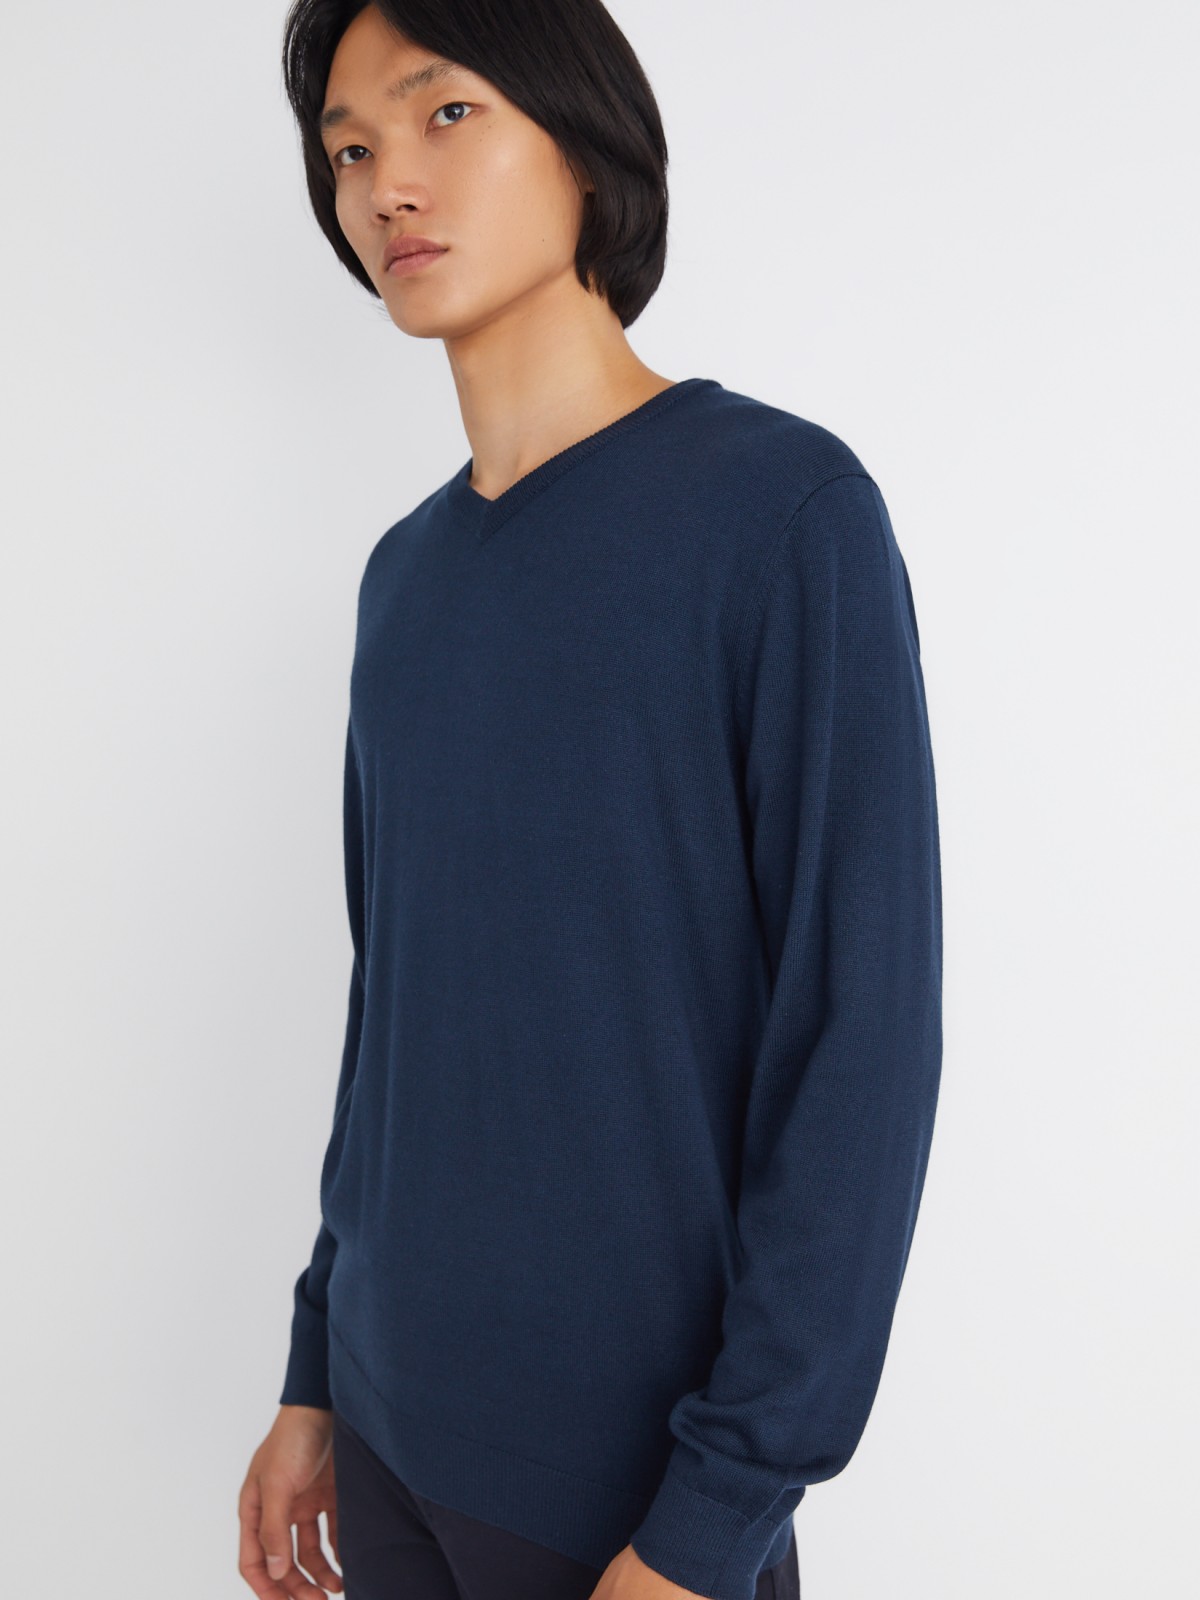 Шерстяной трикотажный пуловер с треугольным вырезом и длинным рукавом zolla 013346163042, цвет синий, размер M - фото 4